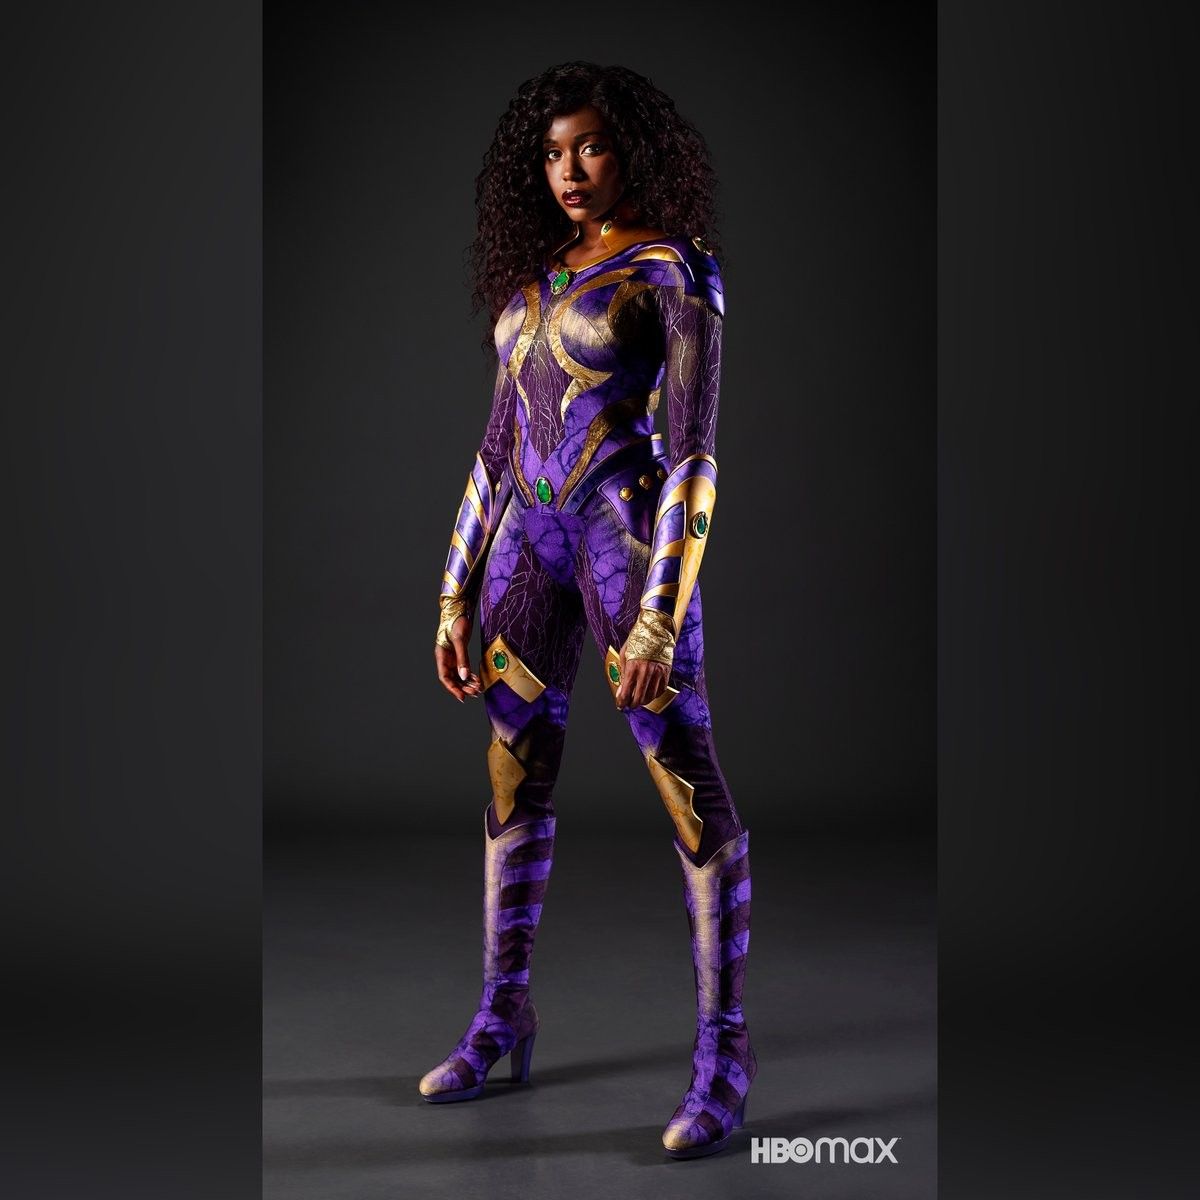 Titans season 3 Anna Diop Starfire costume